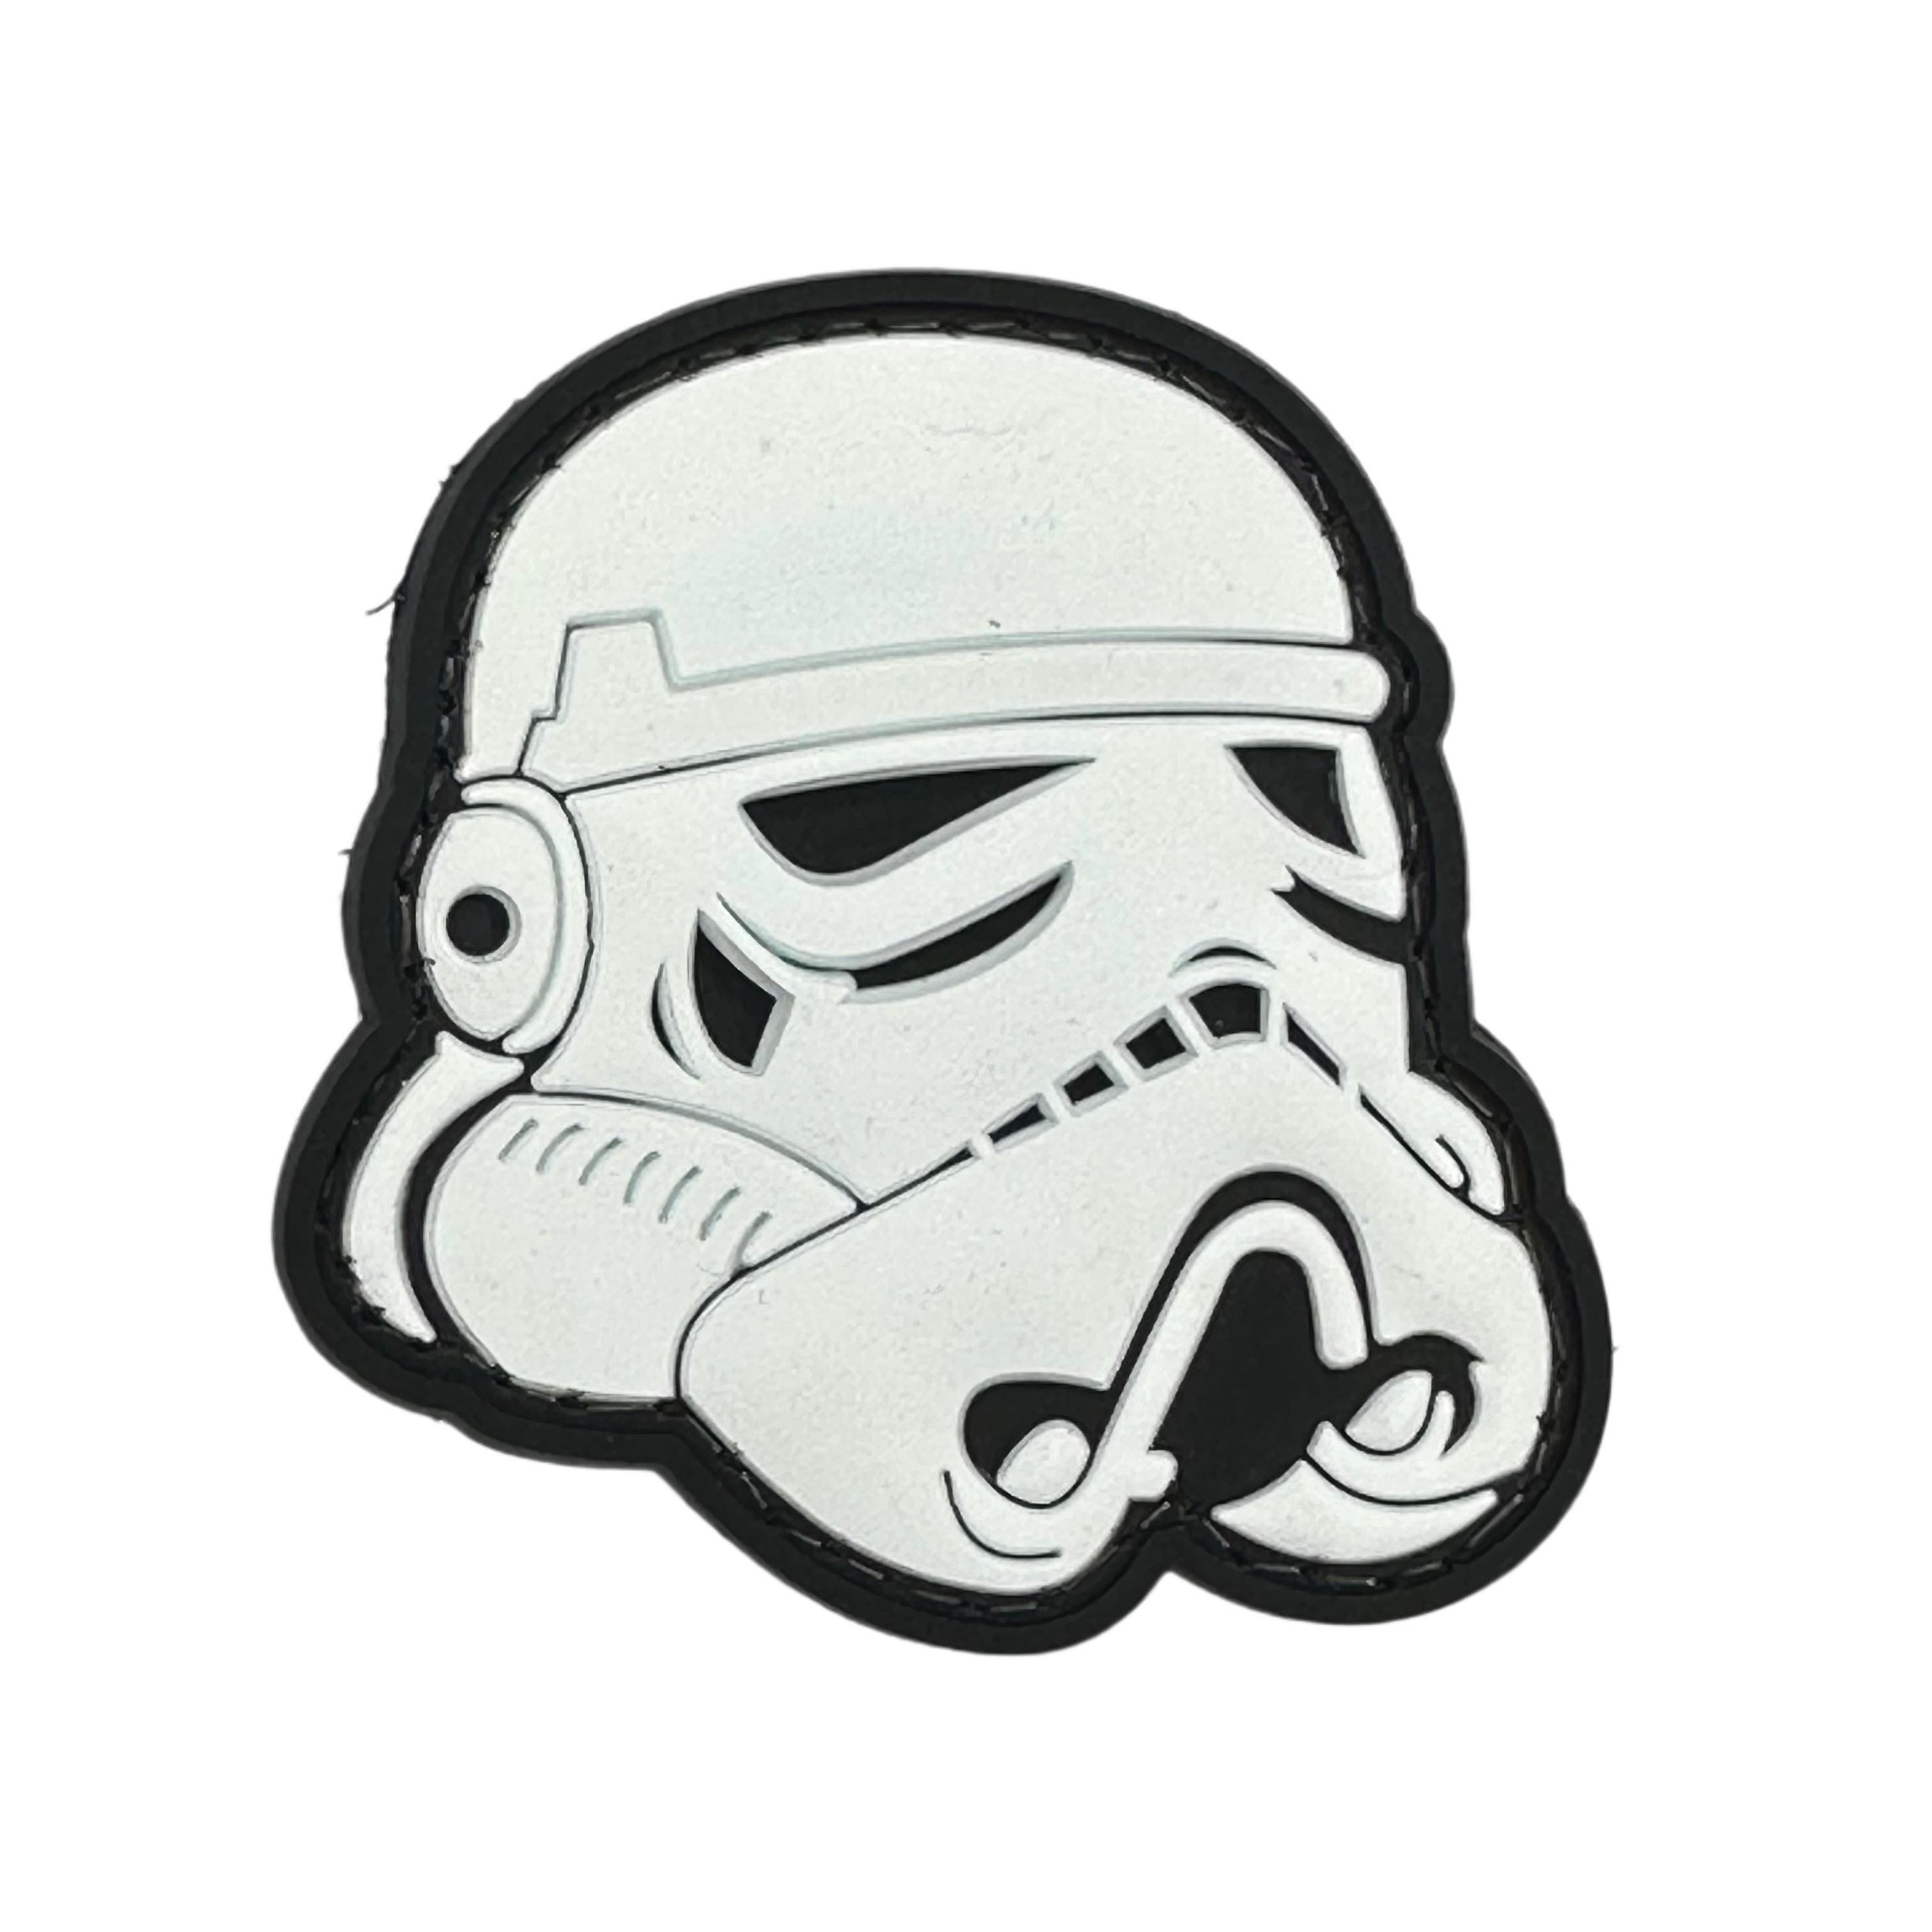 Rubber Patch - Stormtrooper Helmet